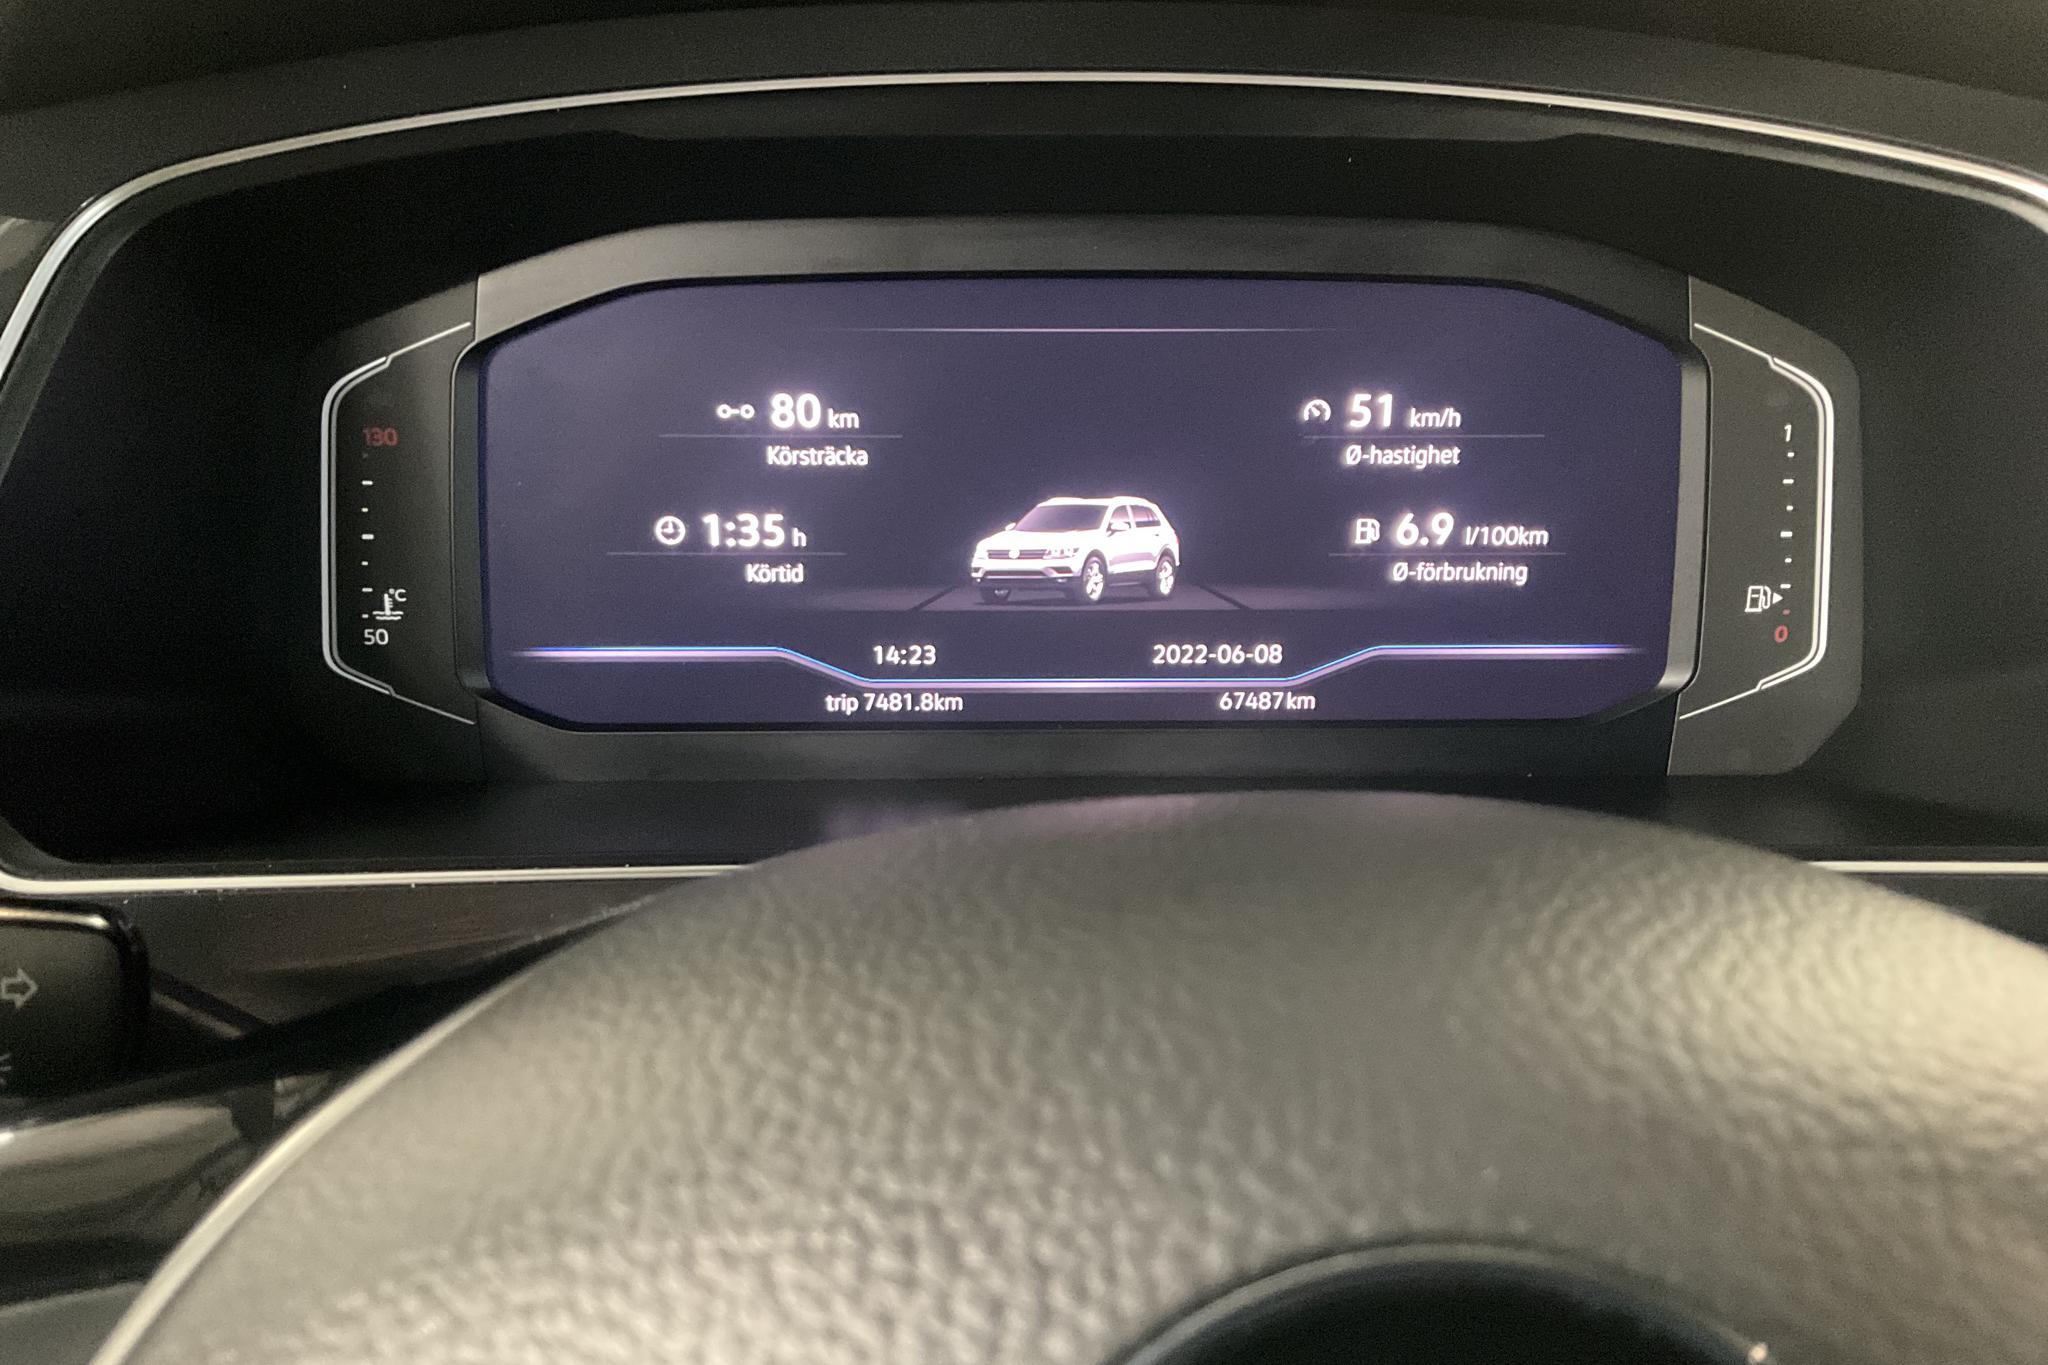 VW Tiguan 2.0 TDI 4MOTION (190hk) - 67 490 km - Automatic - white - 2019